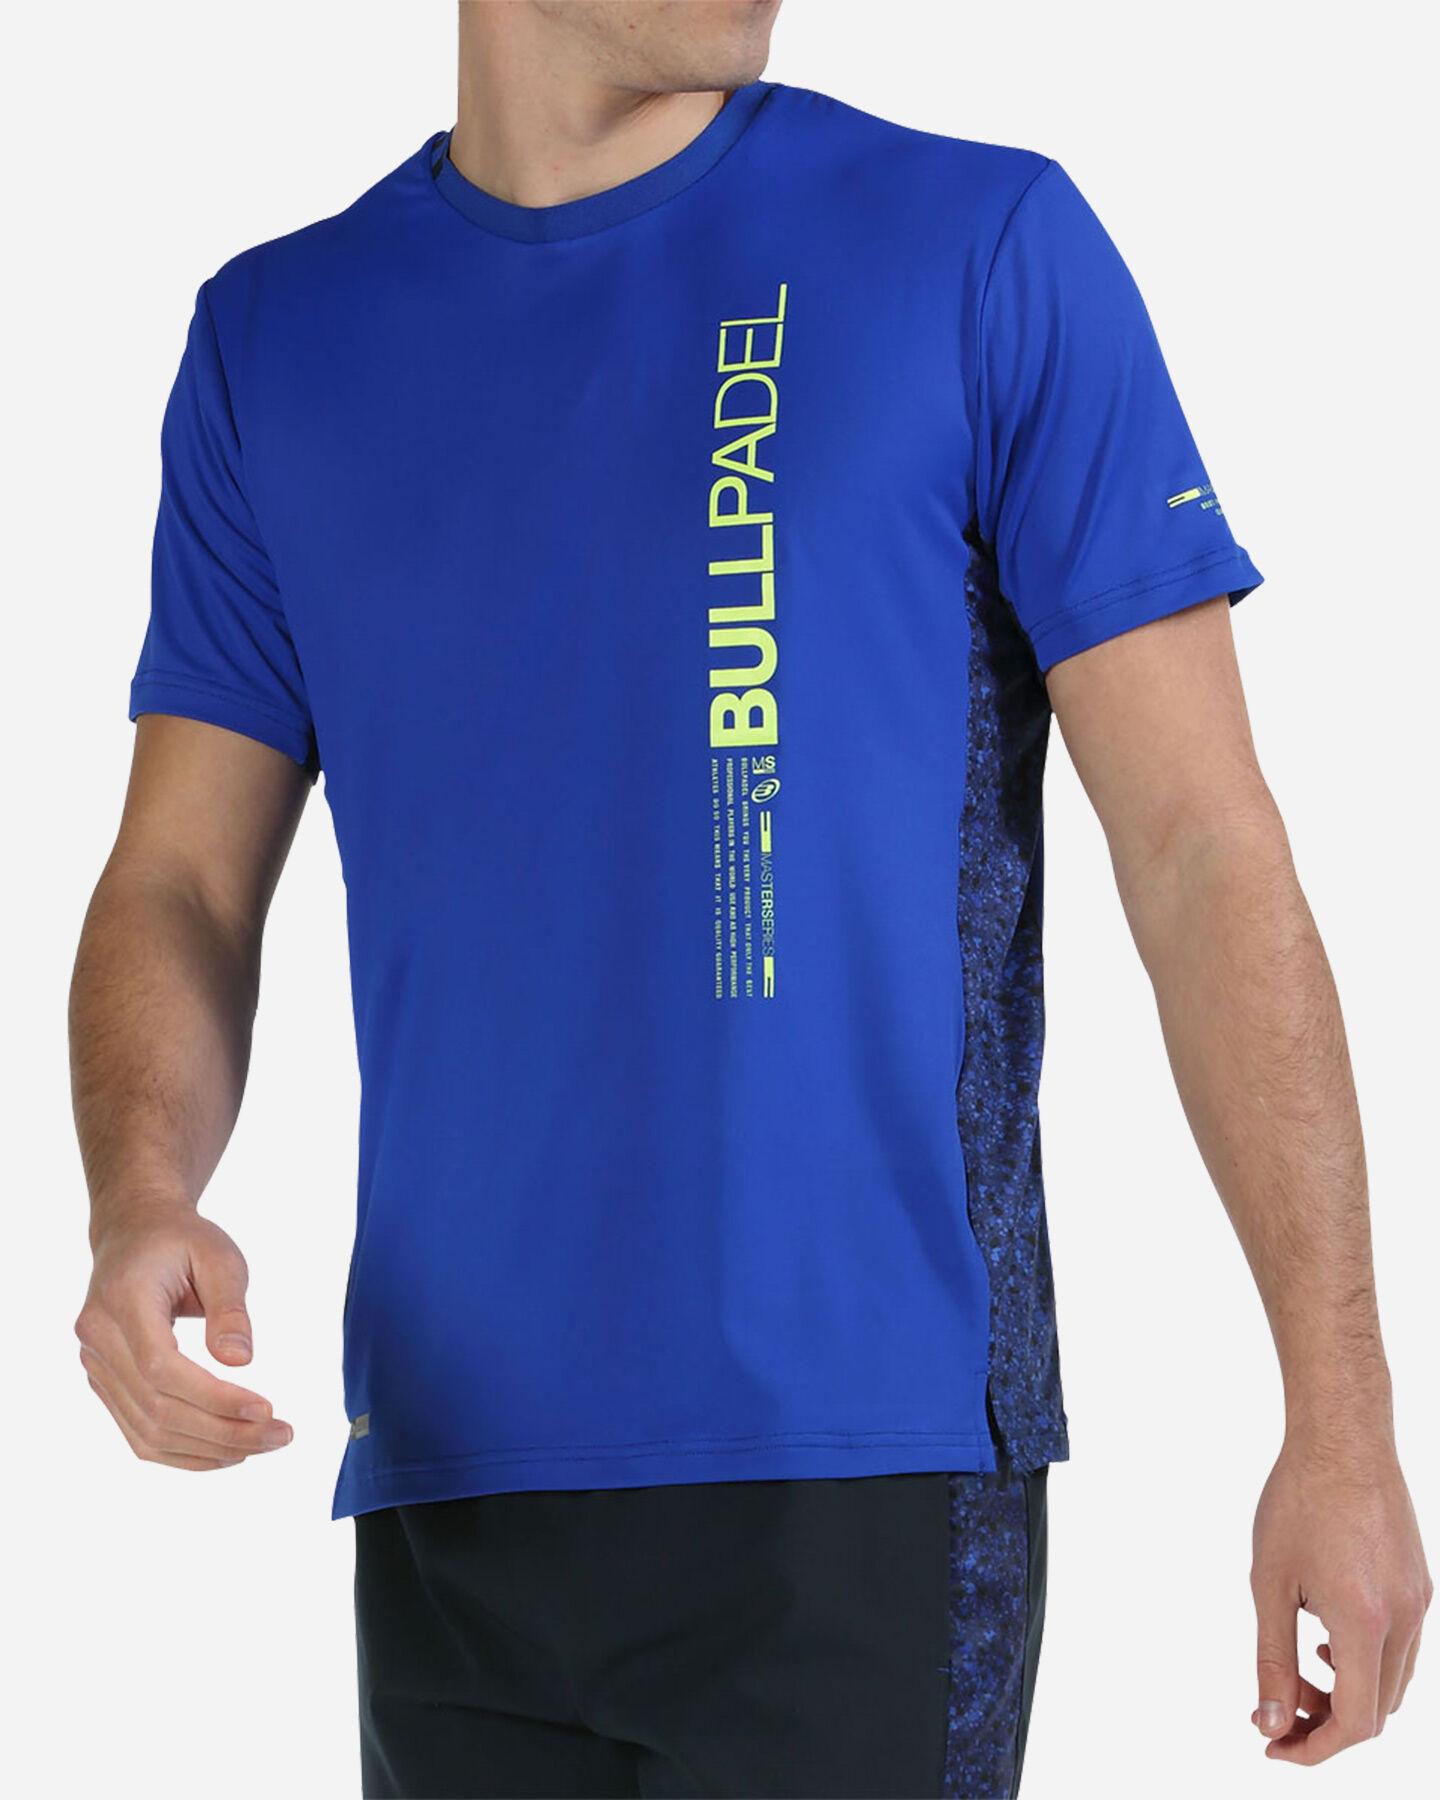  T-Shirt tennis BULLPADEL MIXTA M S5497726|712|S scatto 0